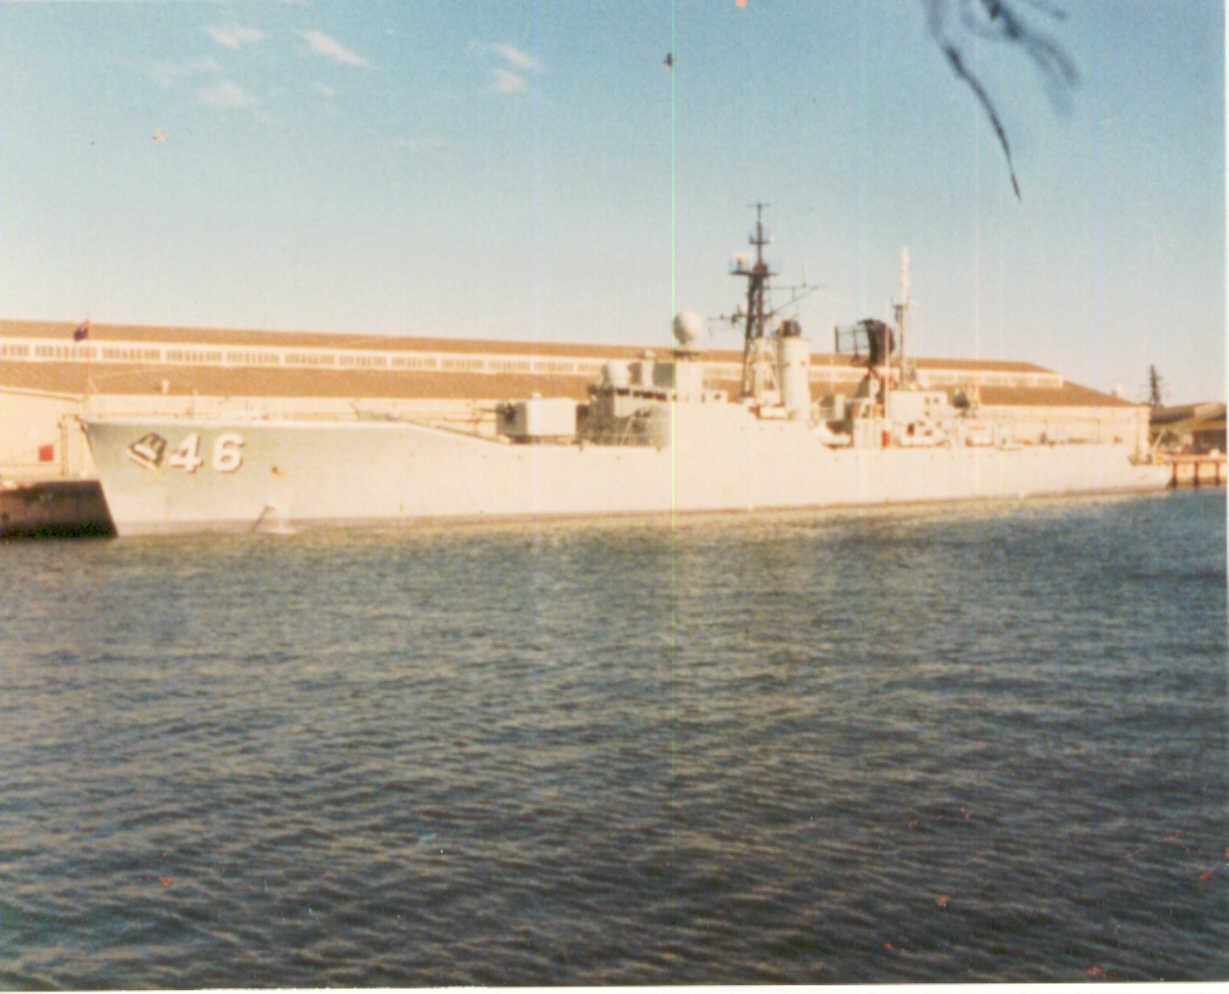 Naval vessel at Port Adelaide